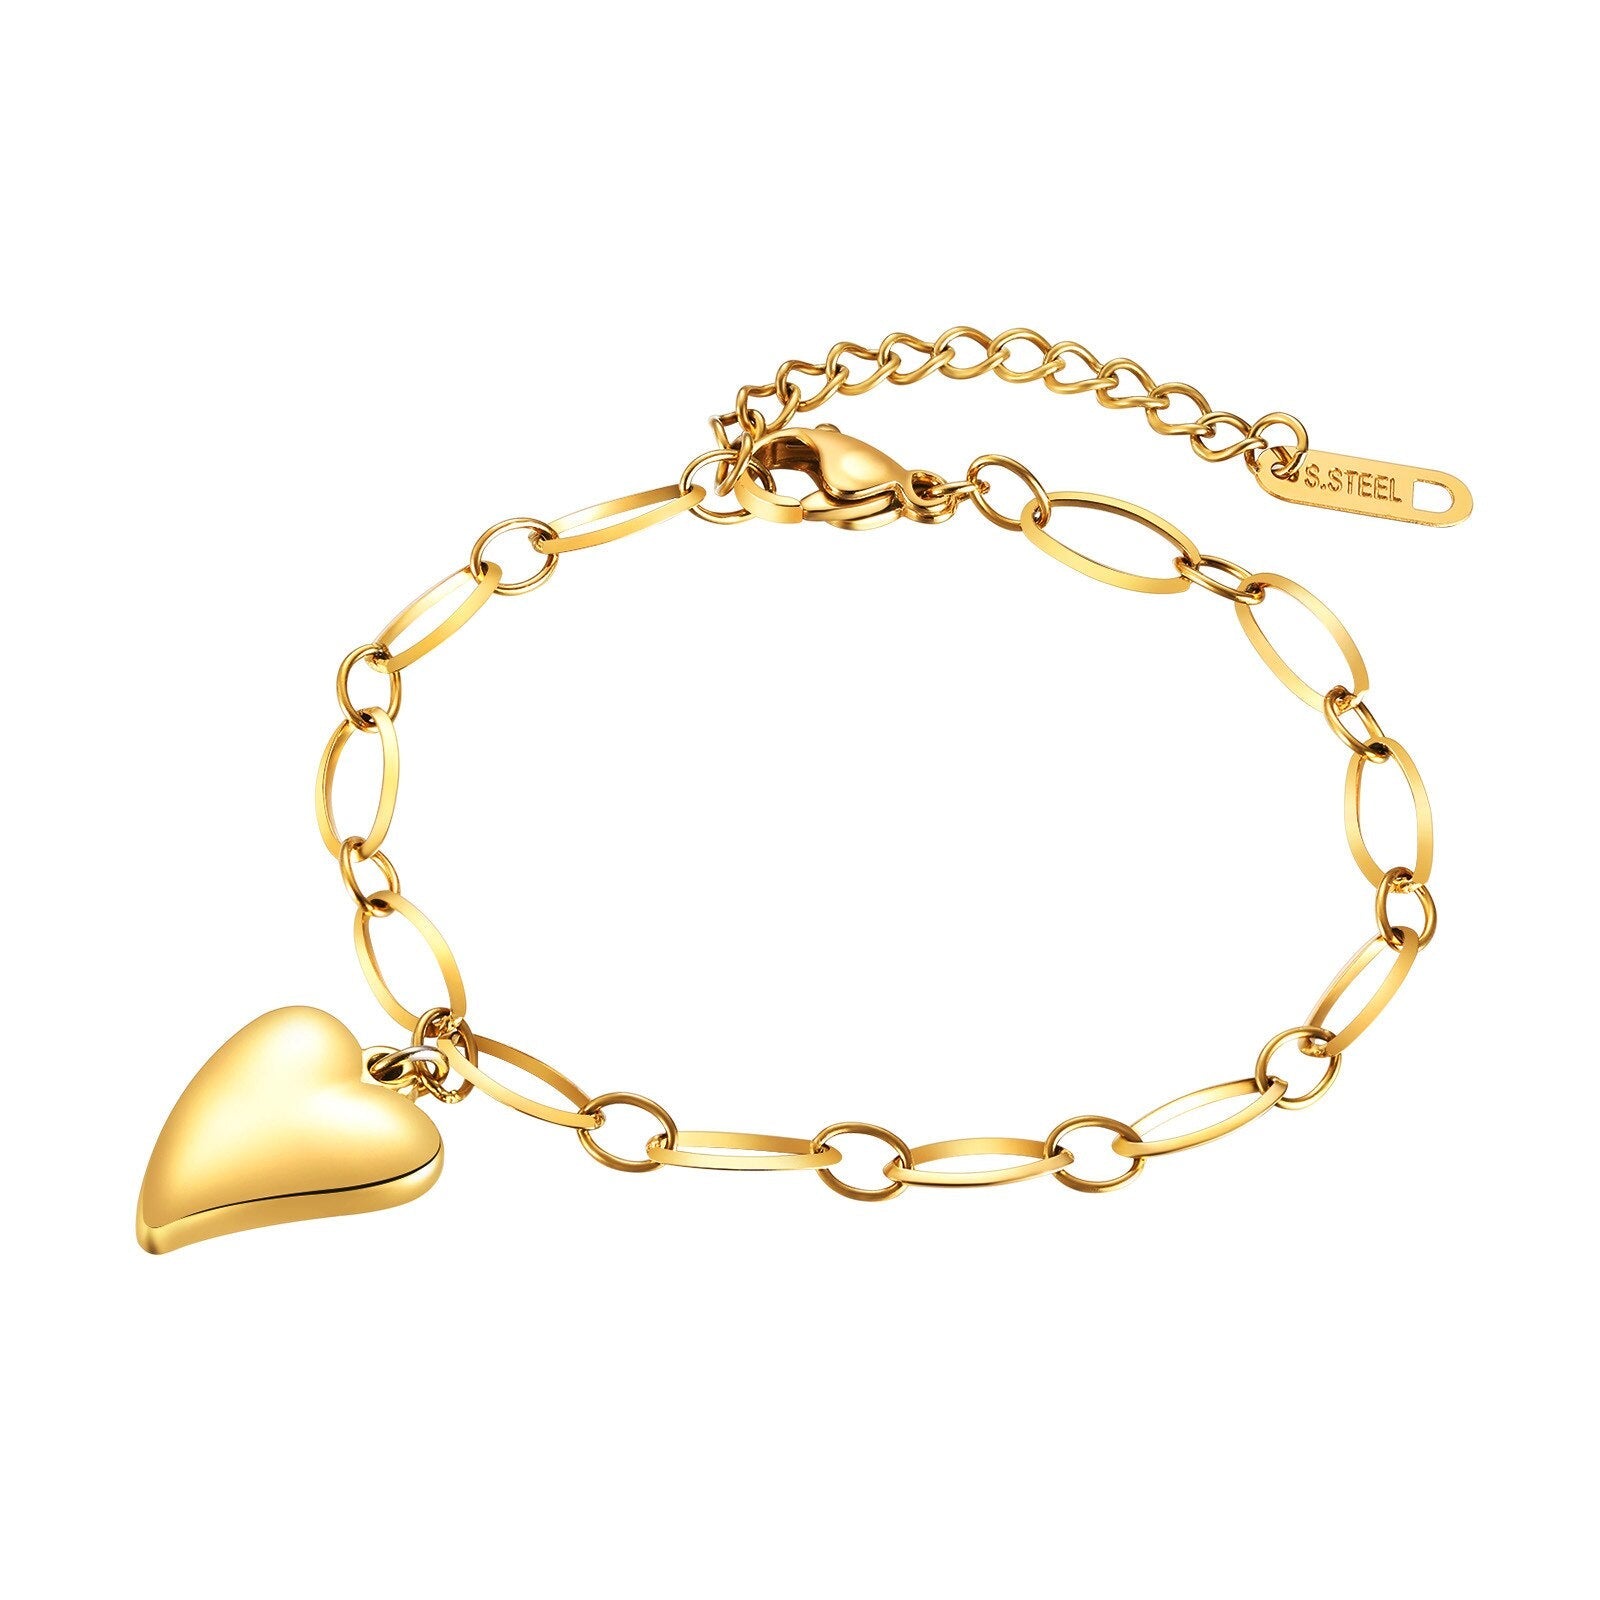 Oval Chain Bracelet with Heart Pendant-Women Bracelets-Auswara